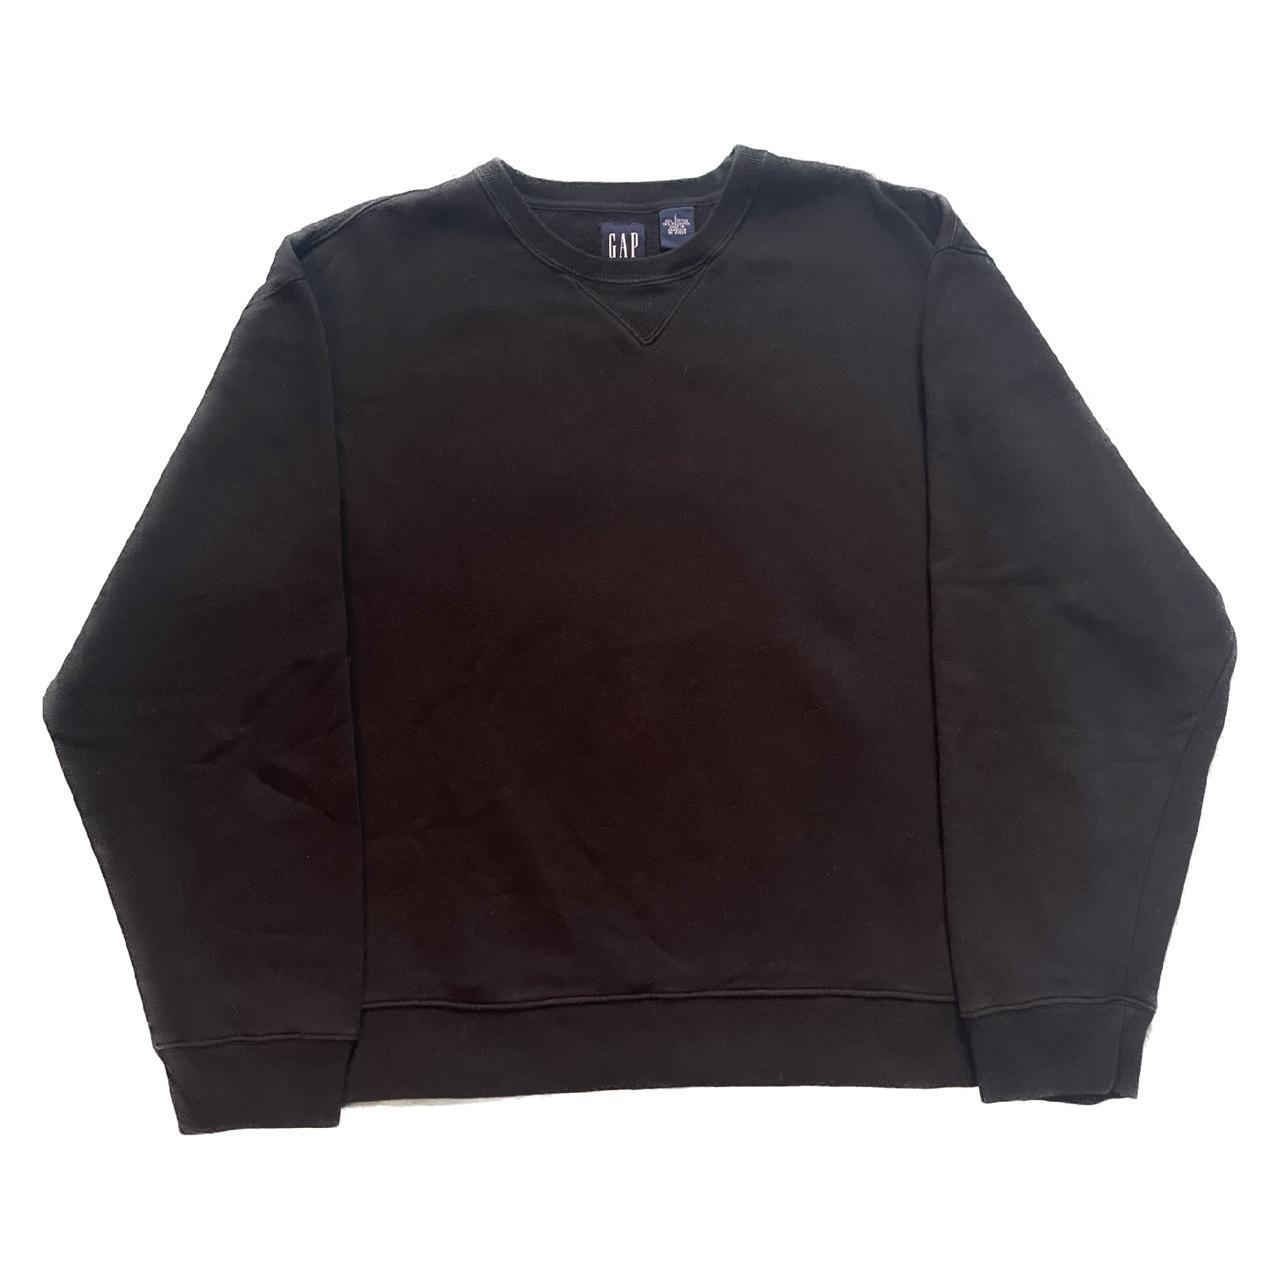 GAP: Fleece Crewneck Sweatshirt • Color: Black •... - Depop